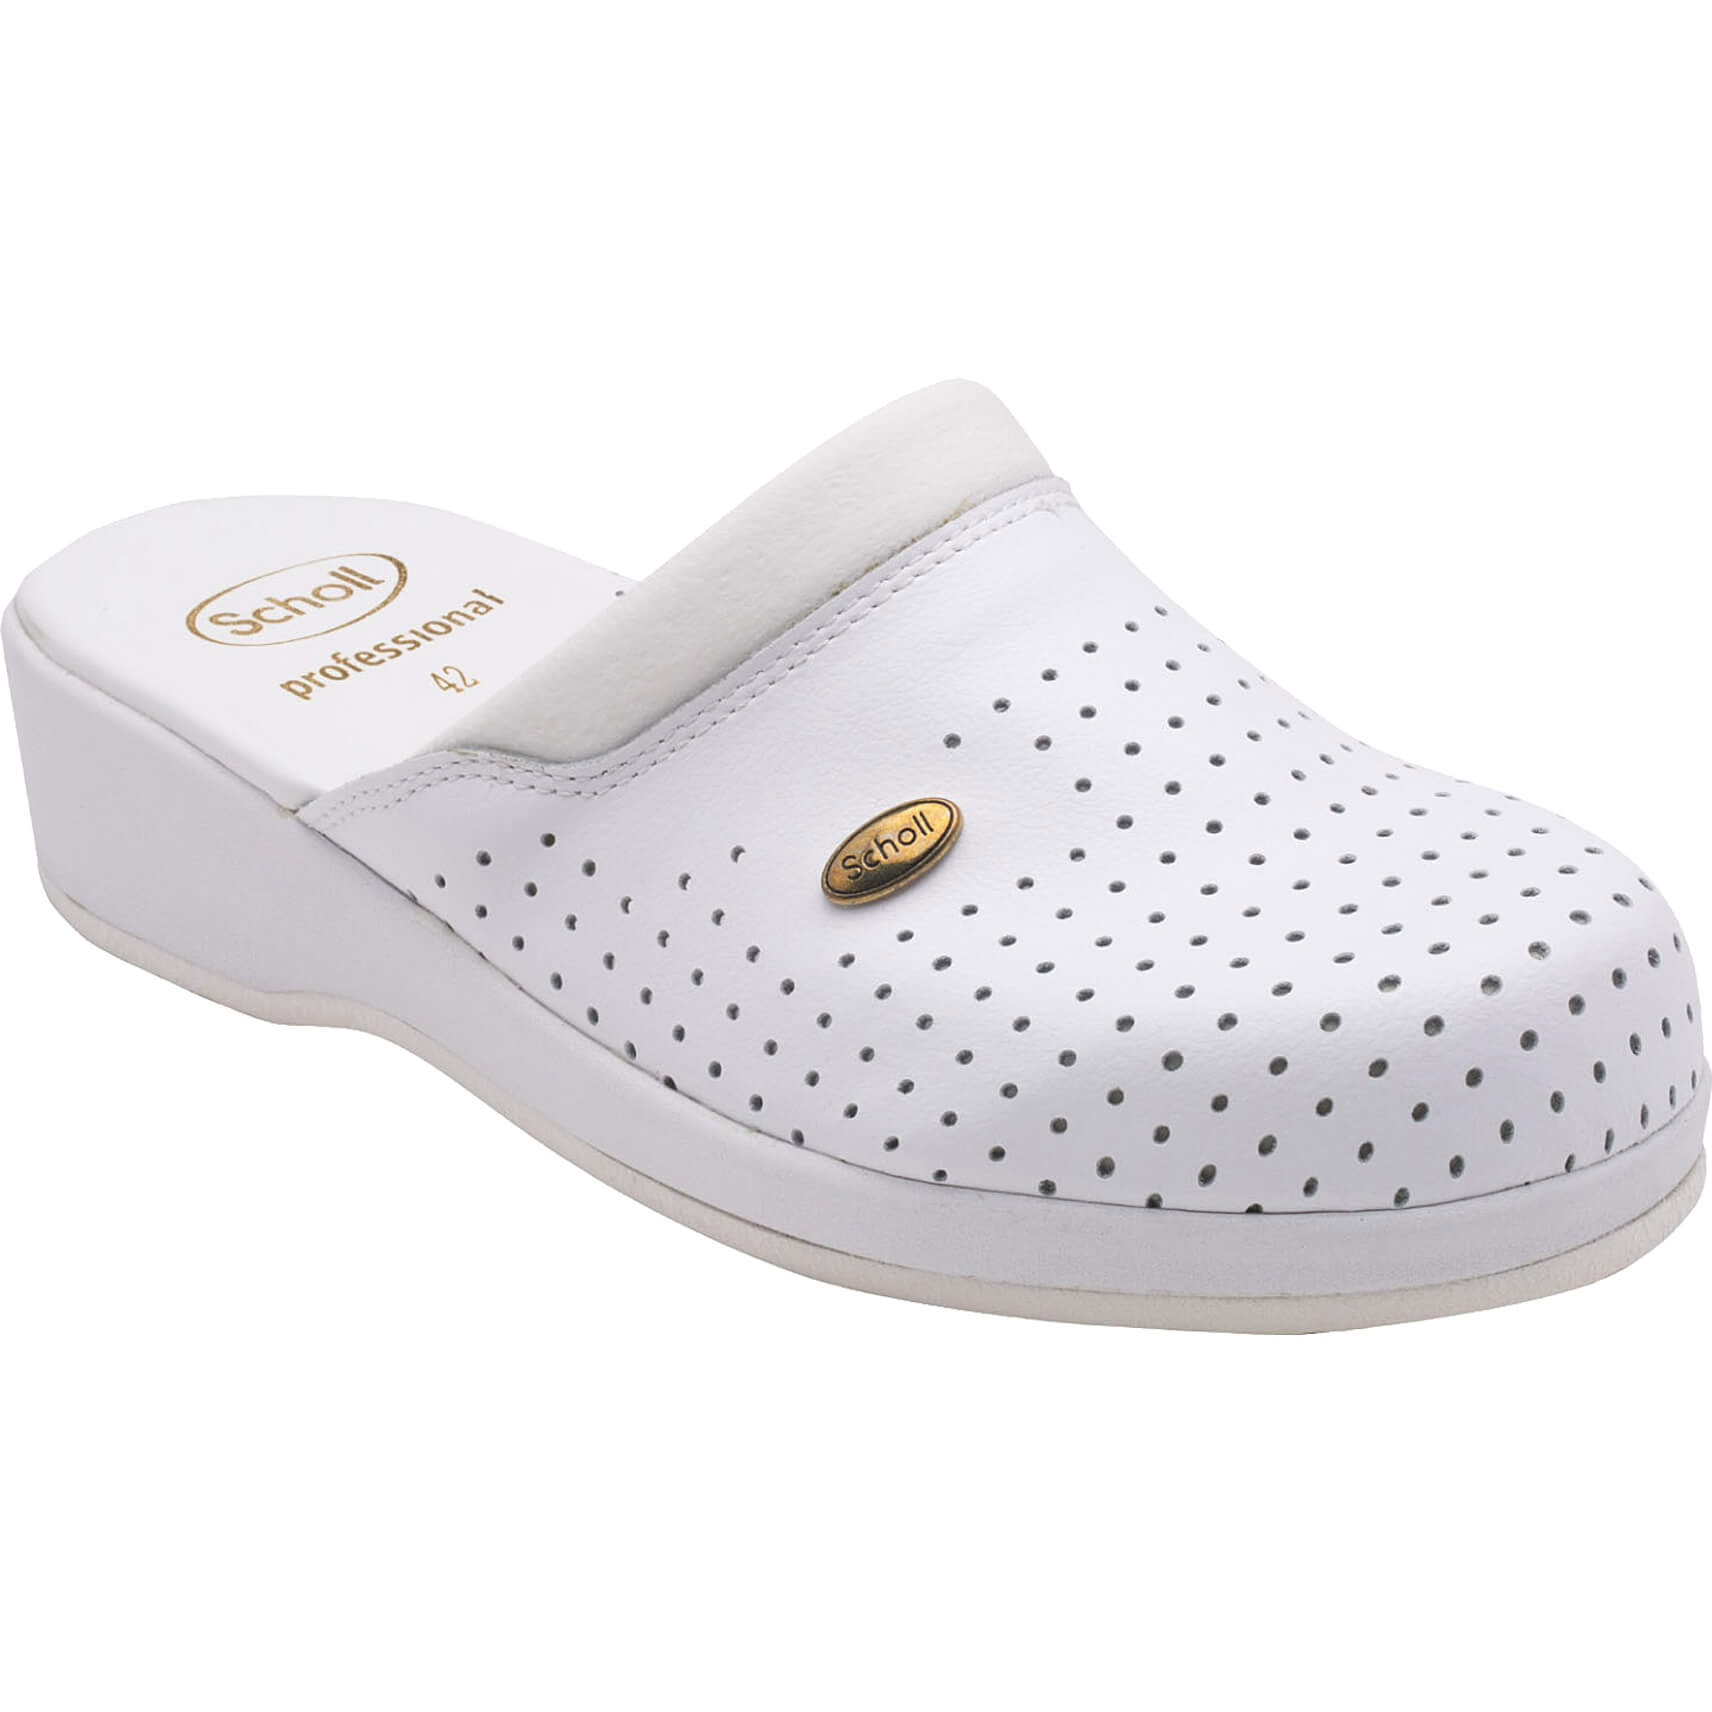 Scholl Shoes Back Guard Σαμπό Λευκό Αναπαυτικά Παπούτσια που Χαρίζουν Σωστή Στάση & Φυσικό Χωρίς Πόνο Βάδισμα 1 Ζευγάρι - 42 19505_1928